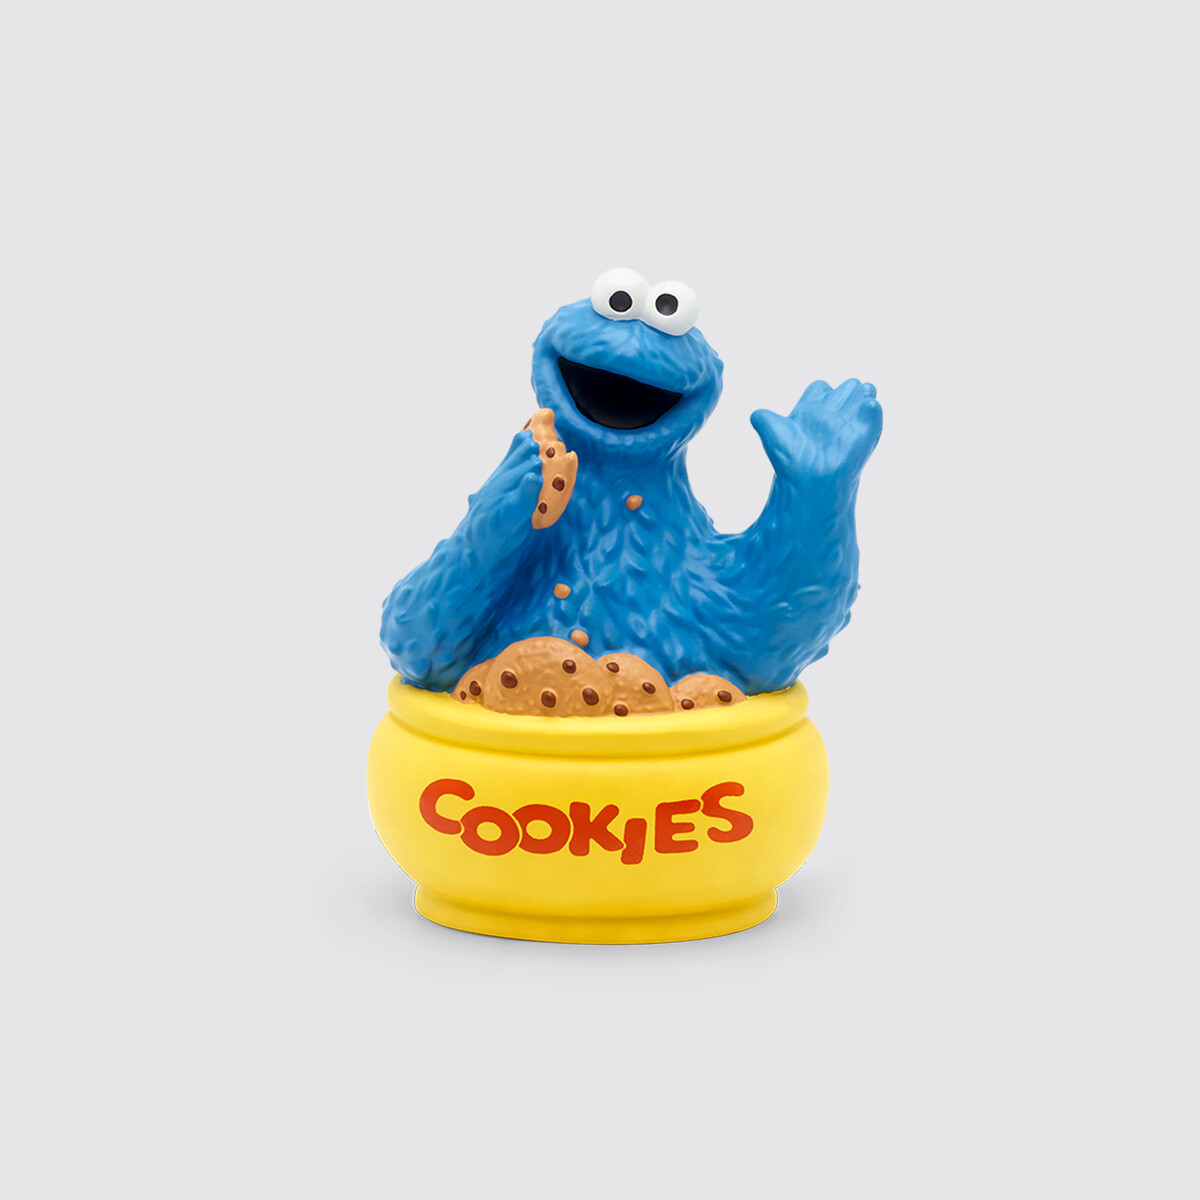 Tonie- Sesame Street Cookie Monster